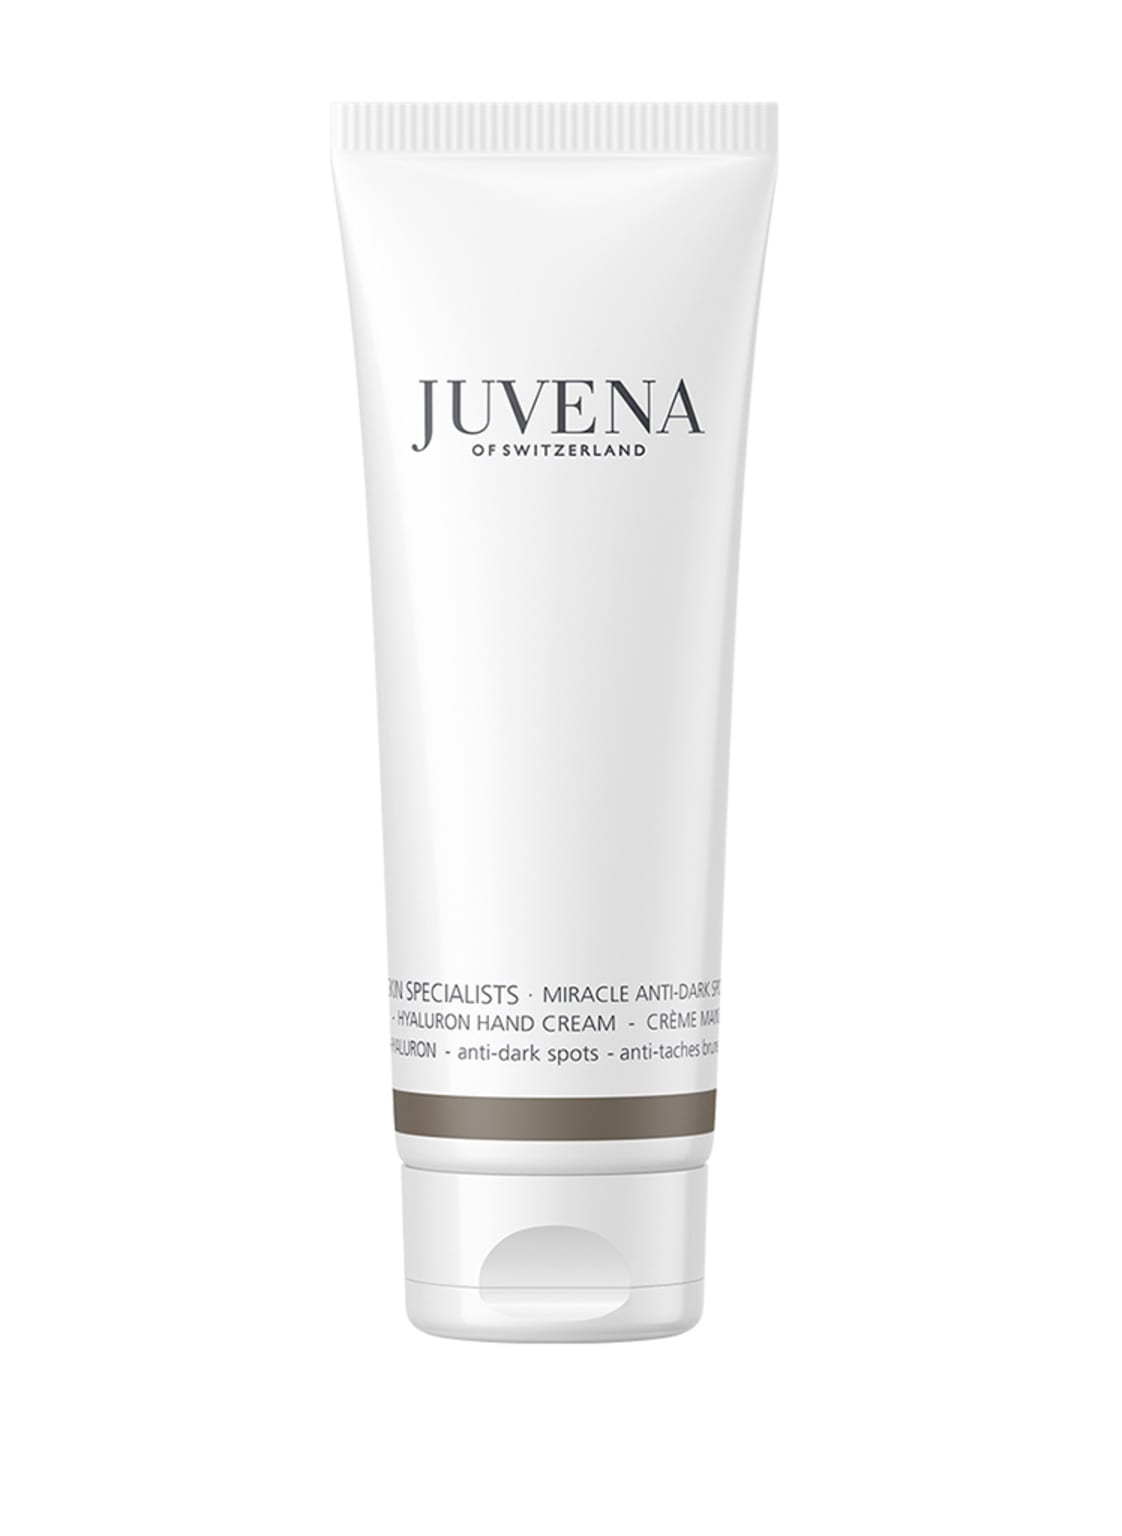 Juvena Skin Specalists Miracle Anti-Dark Spot Hand Cream 100 ml von Juvena